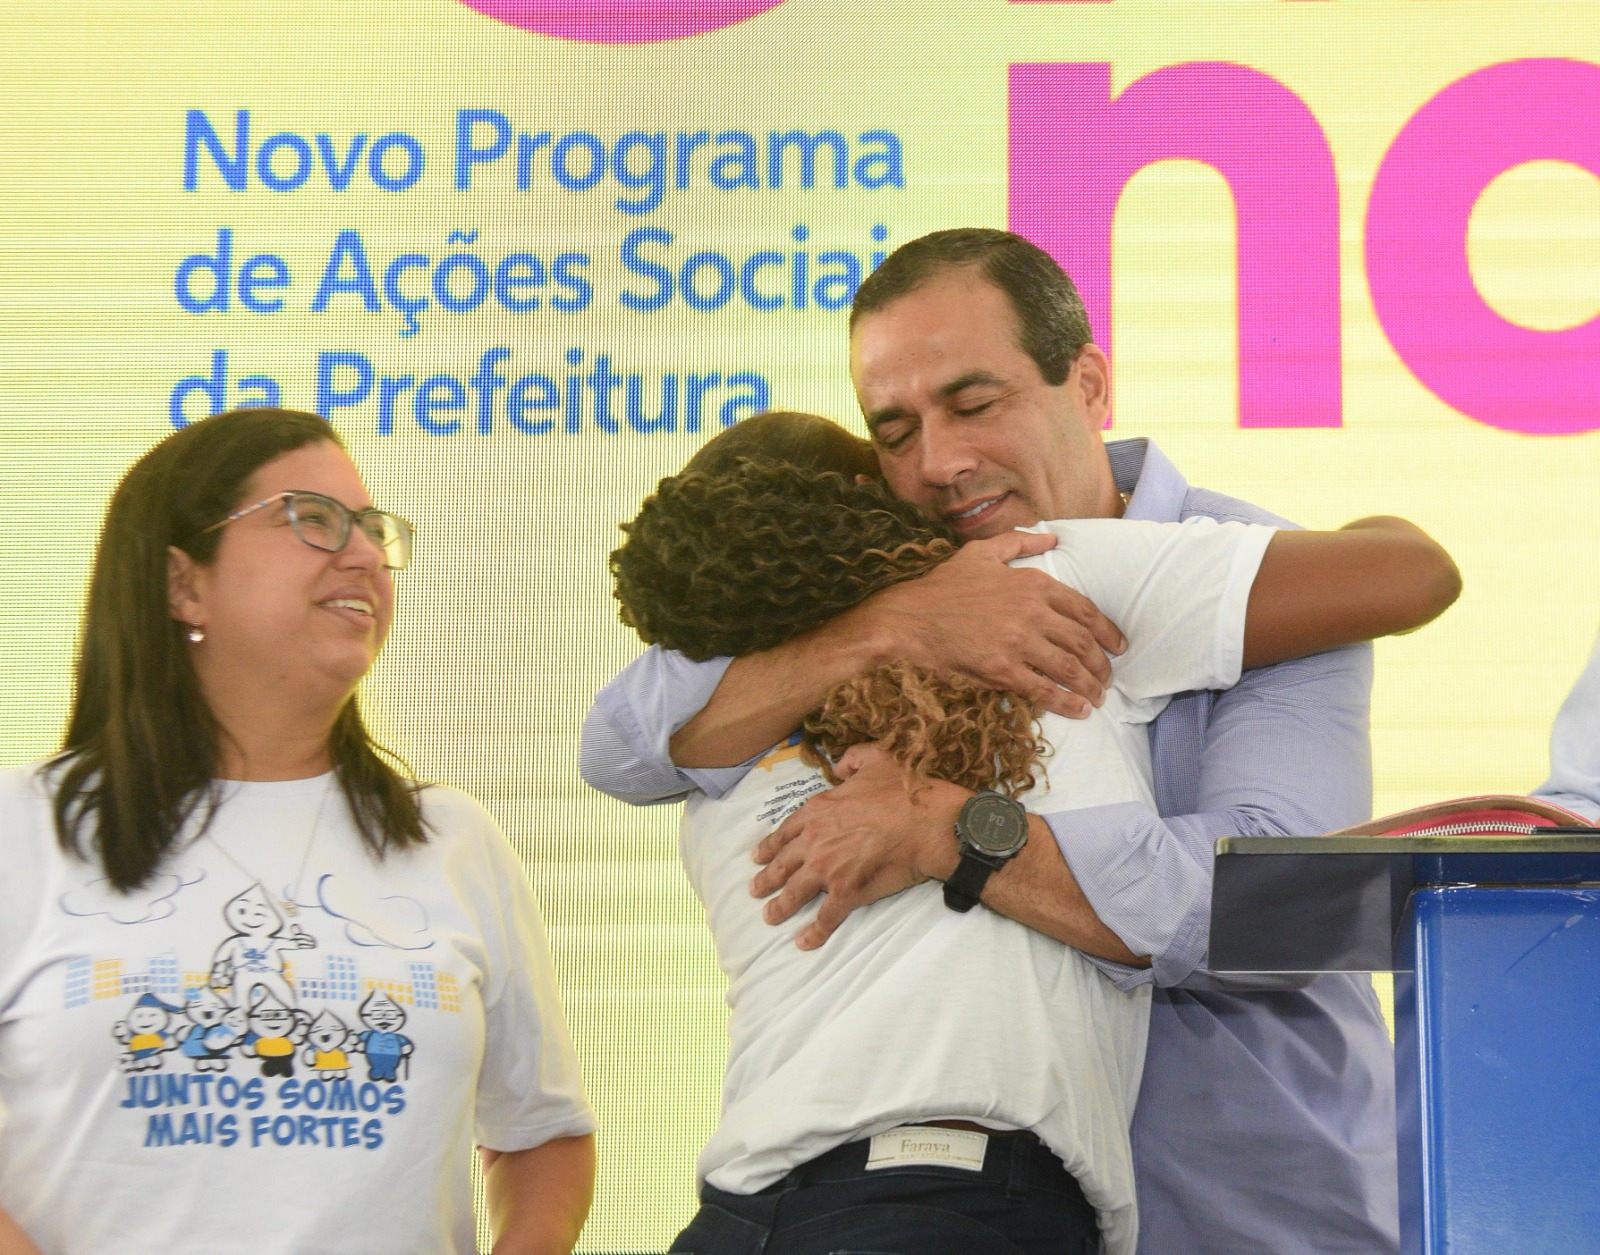 Prefeitura lança programa Vida Nova na assistência social com investimento de R$ 200 milhões